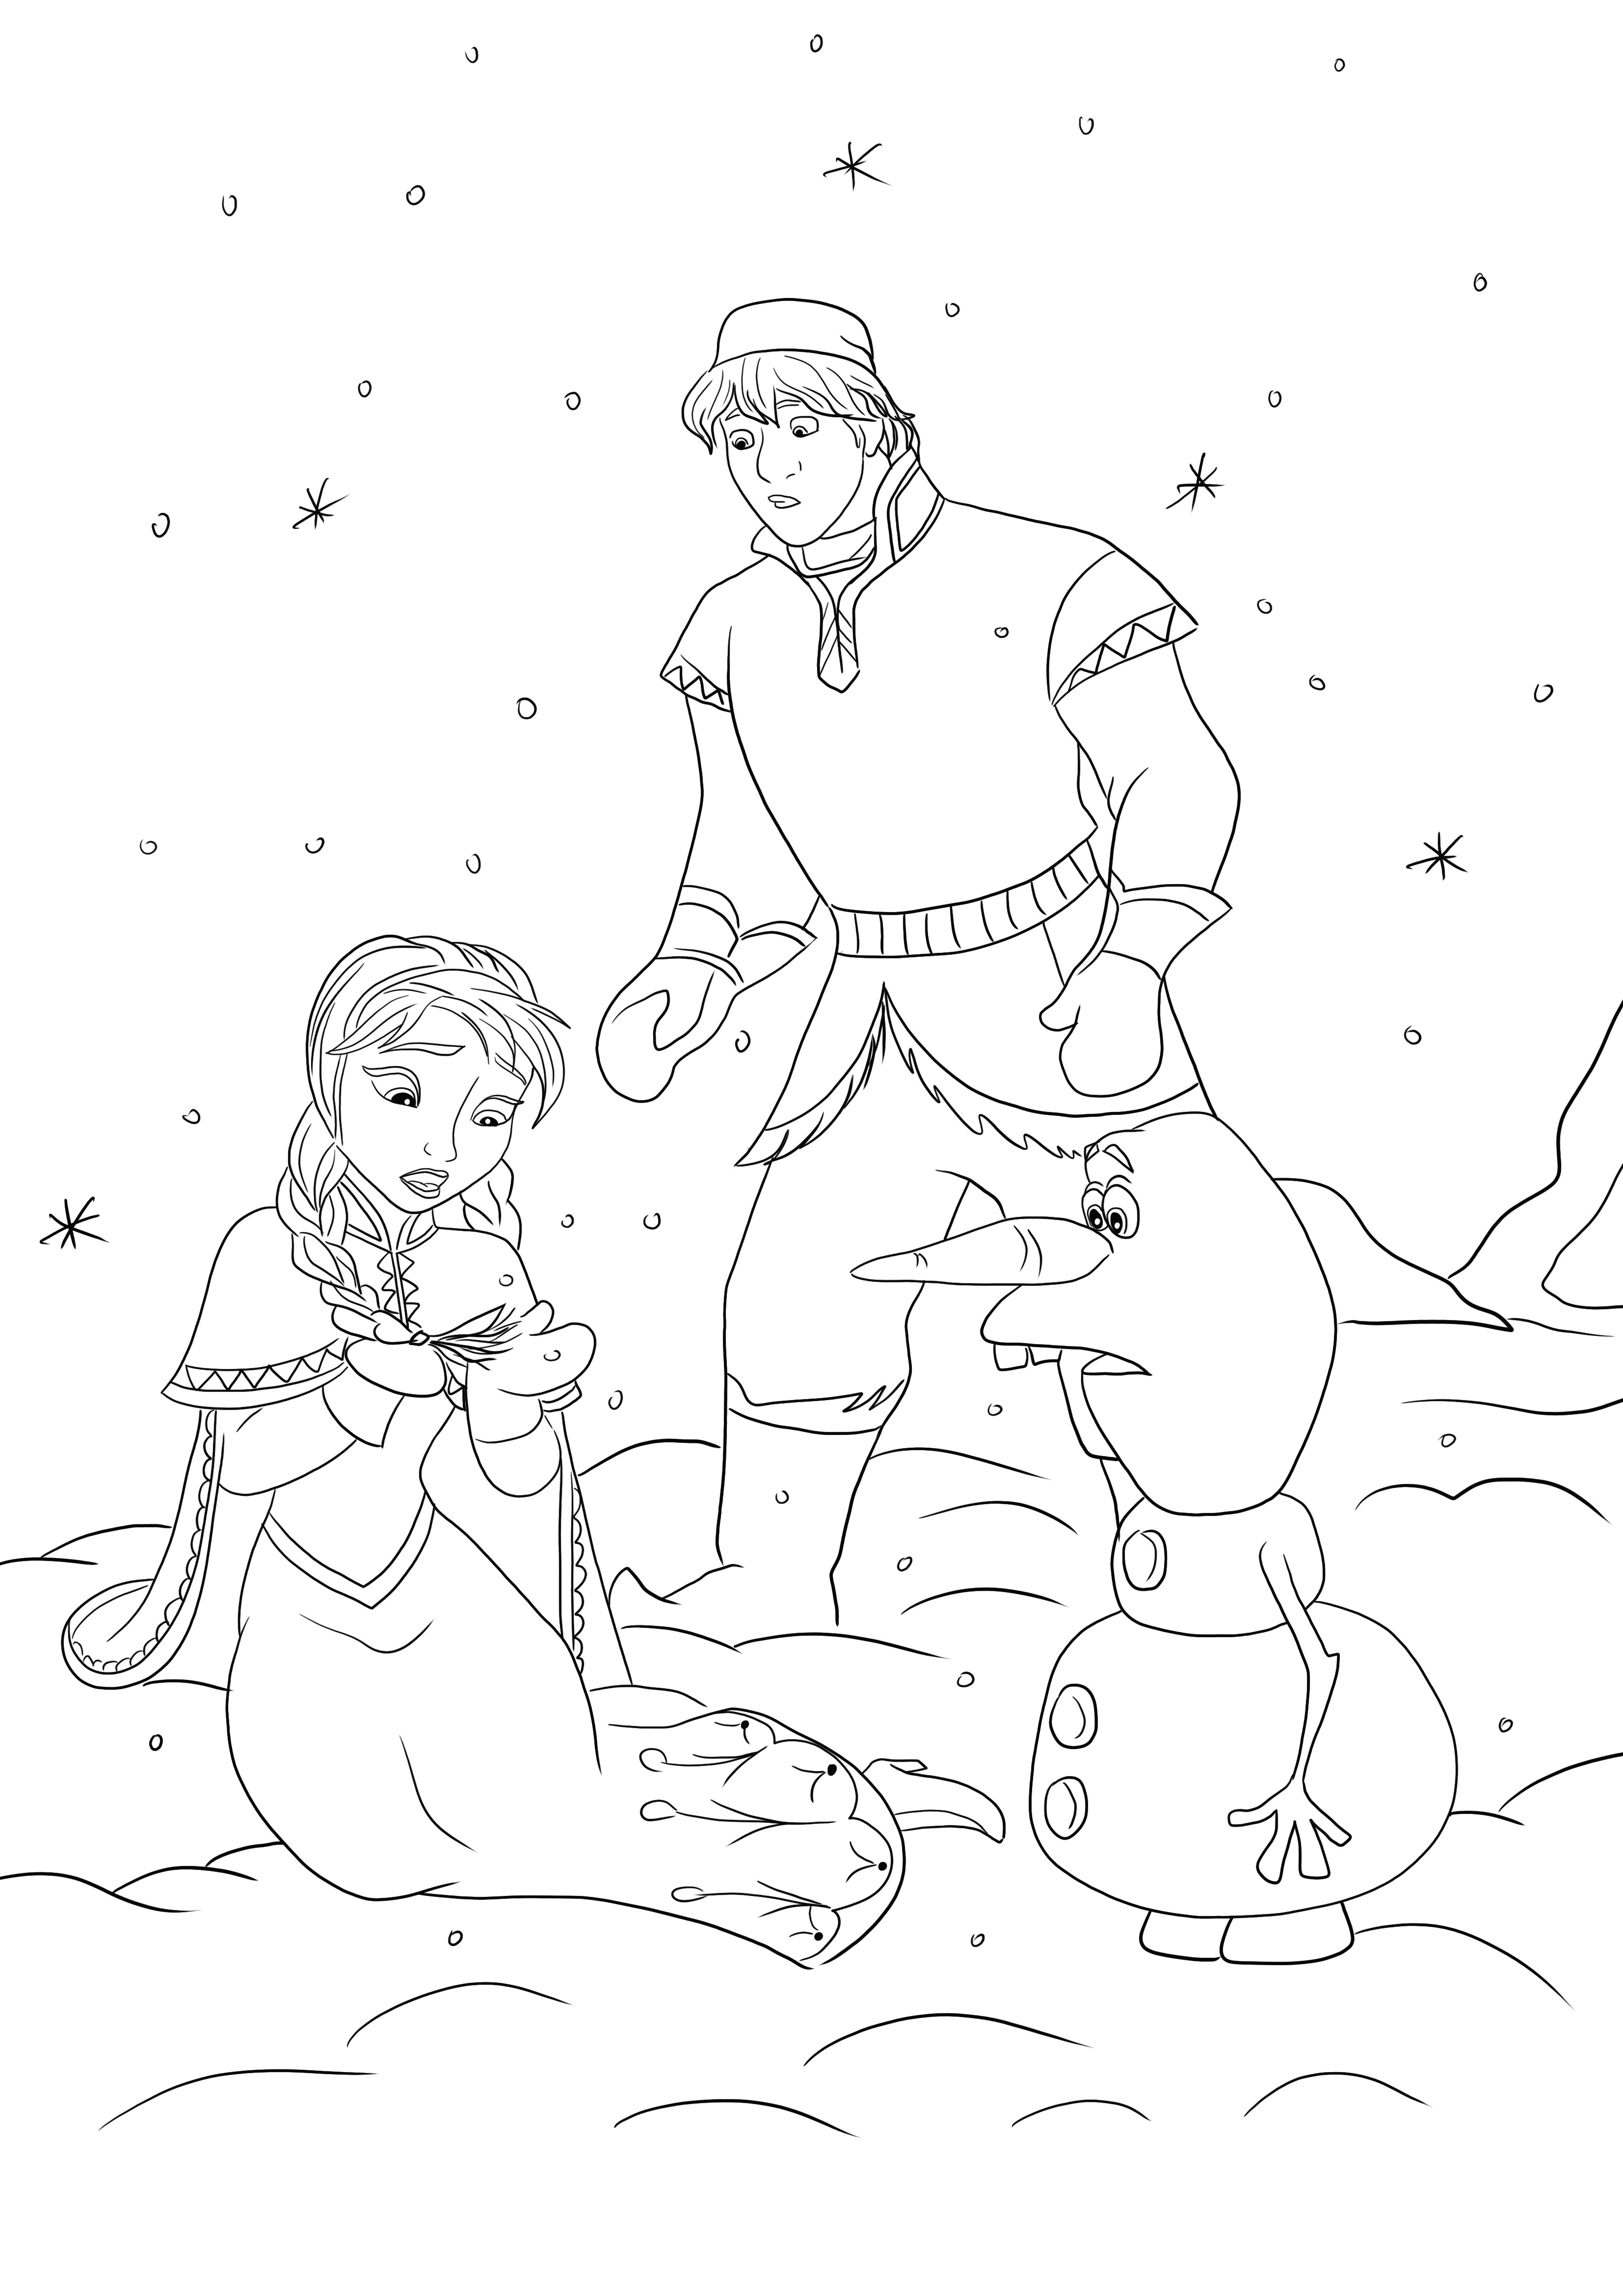 Impression et coloriage gratuits de la page Anna maudite par Elsa pour les enfants